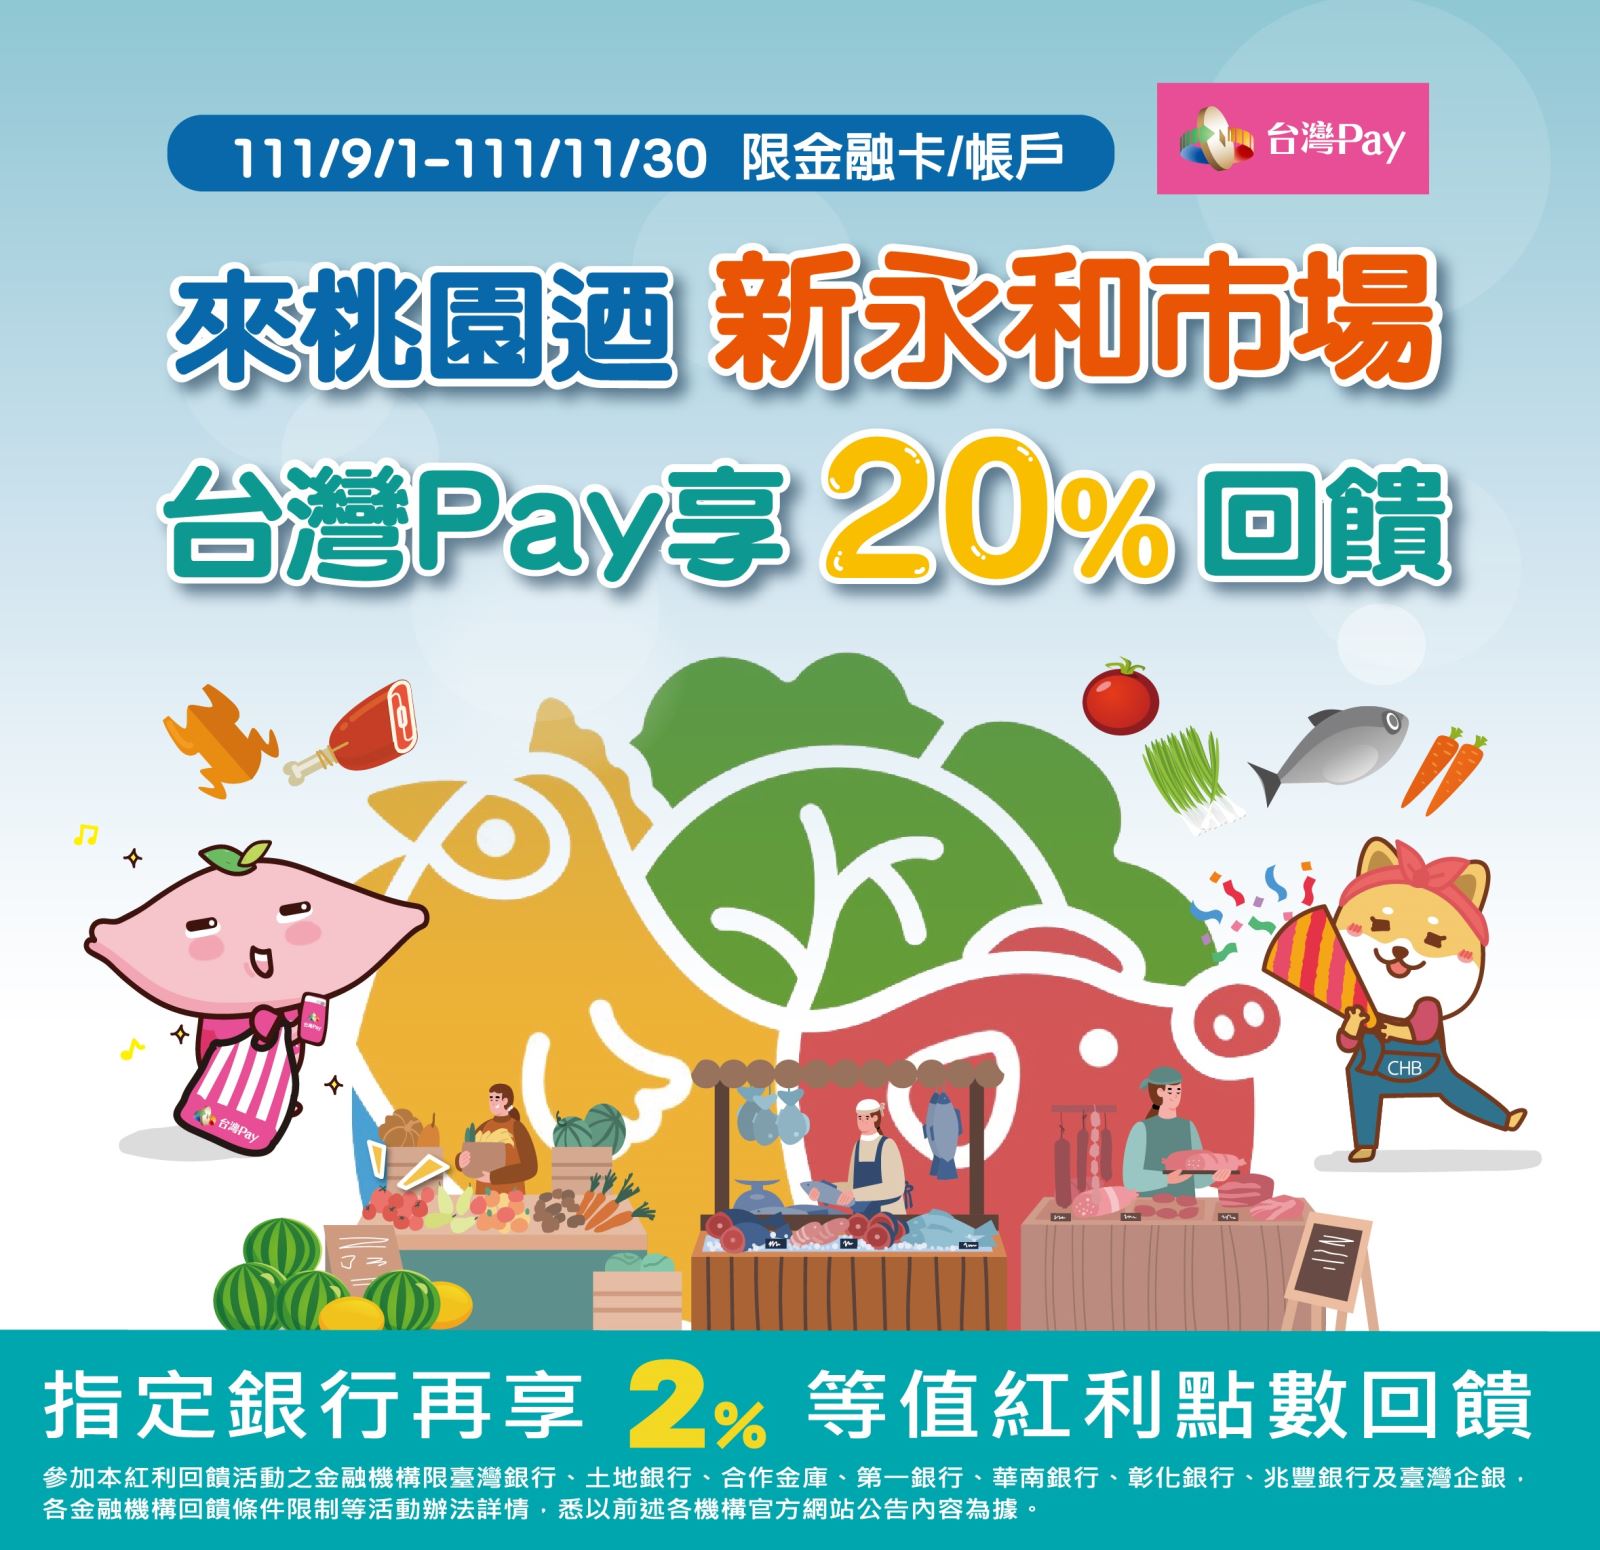 來桃園迺新永和市場 台灣Pay享20%回饋。單筆消費不限金額可享20%之現金回饋(此圖片為本優惠活動主要視覺，活動內容請參考活動辦法說明文字)